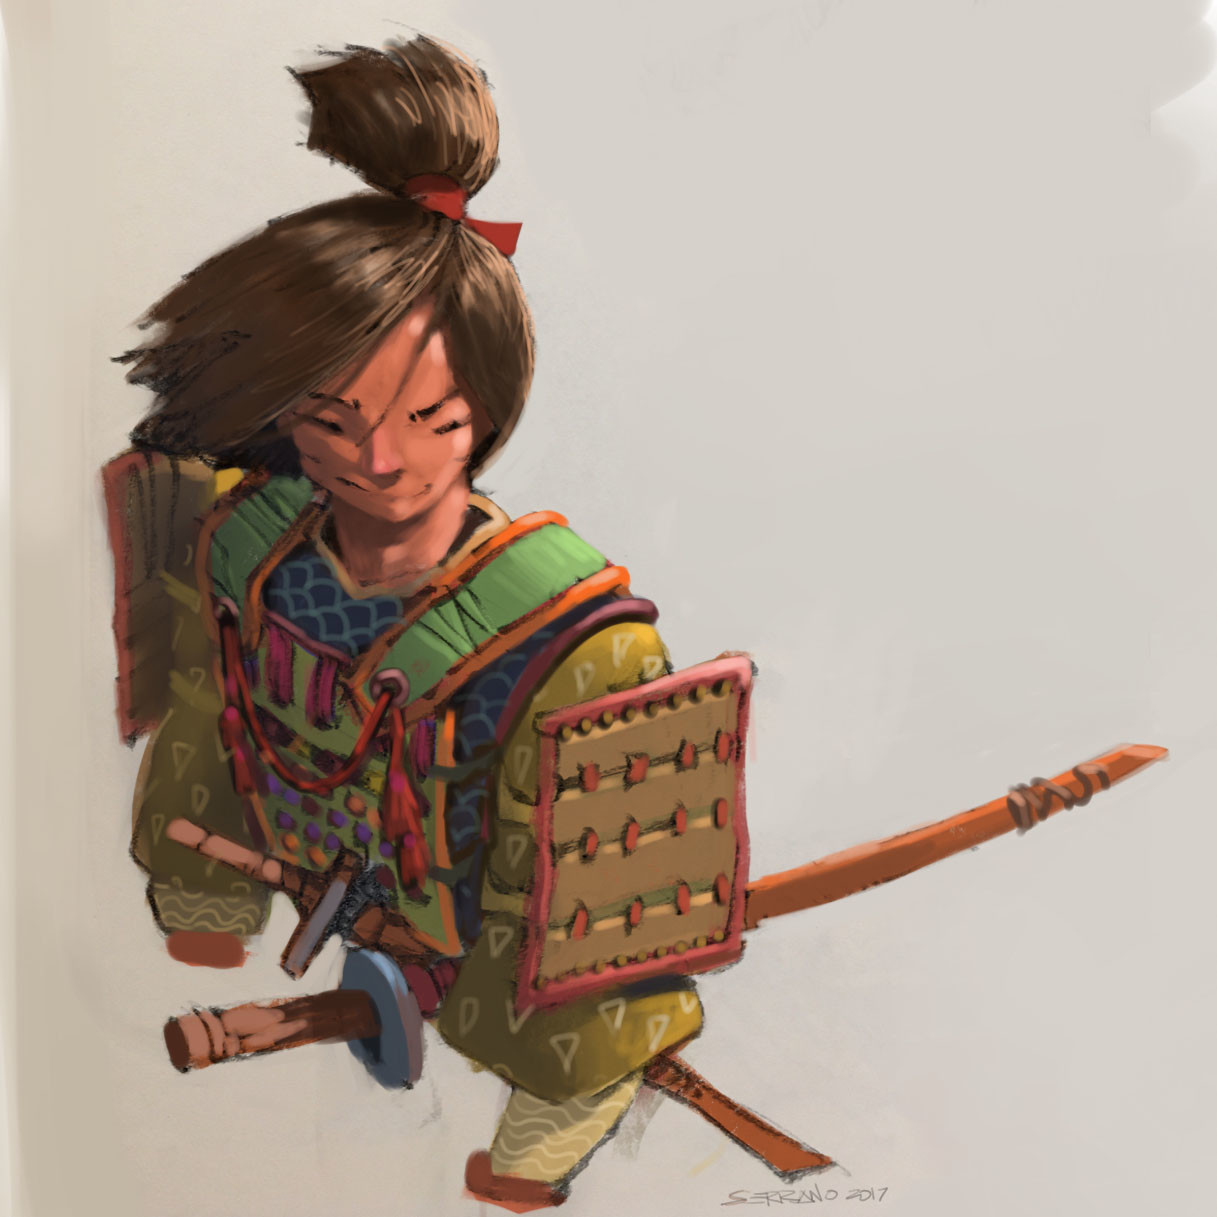 iPhone Painting: Young Samurai